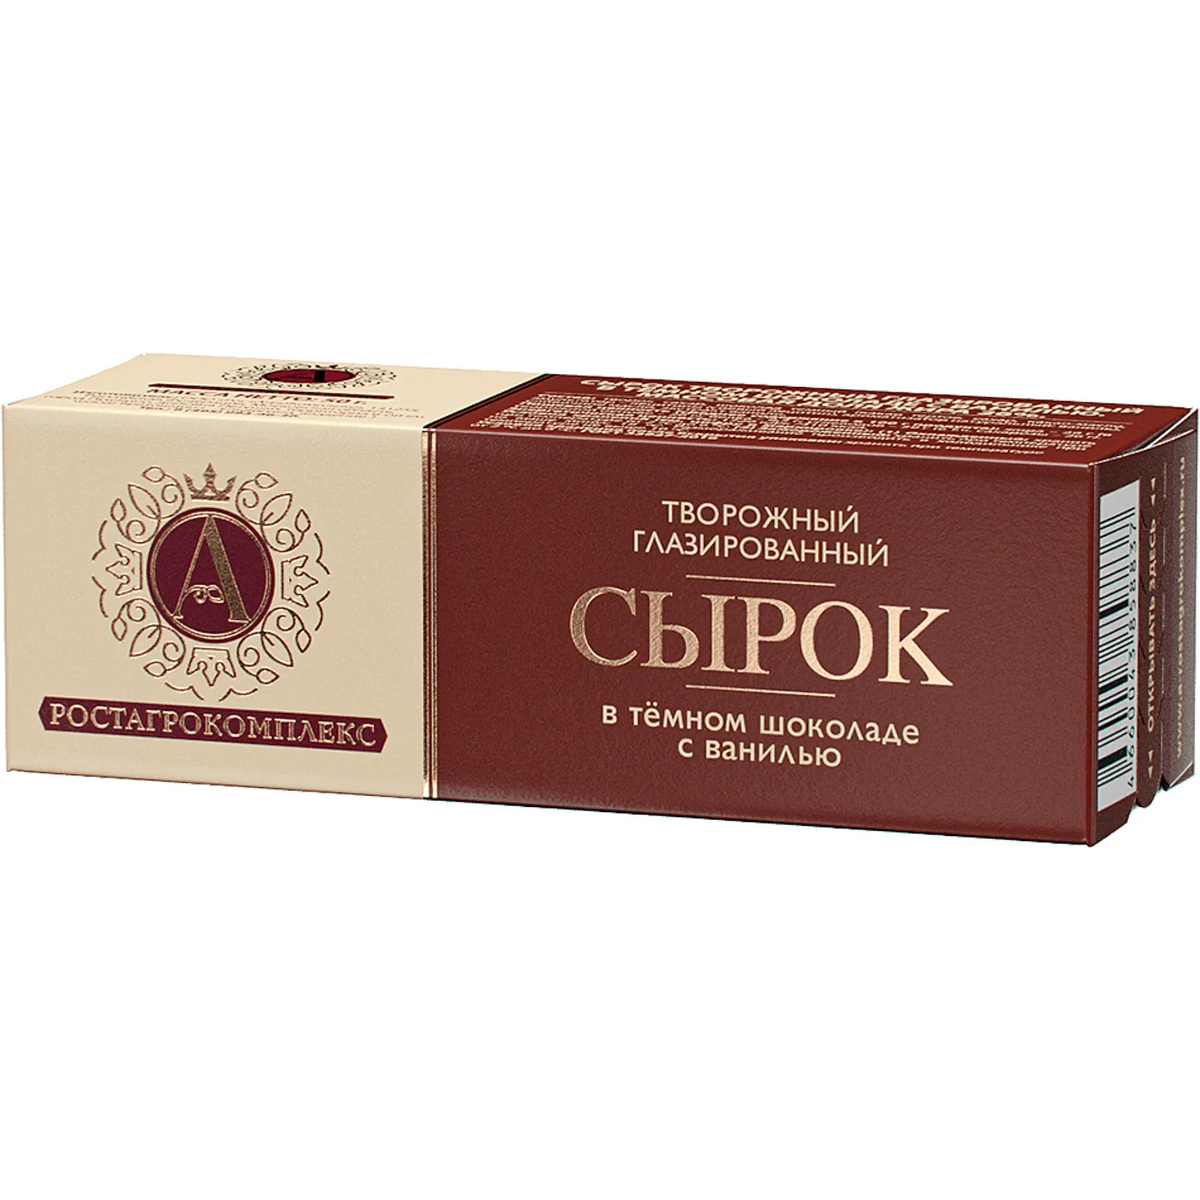 Сырок творожный глазированный РостАгроКомплекс в темном шоколаде с ванилью 26% 50 г